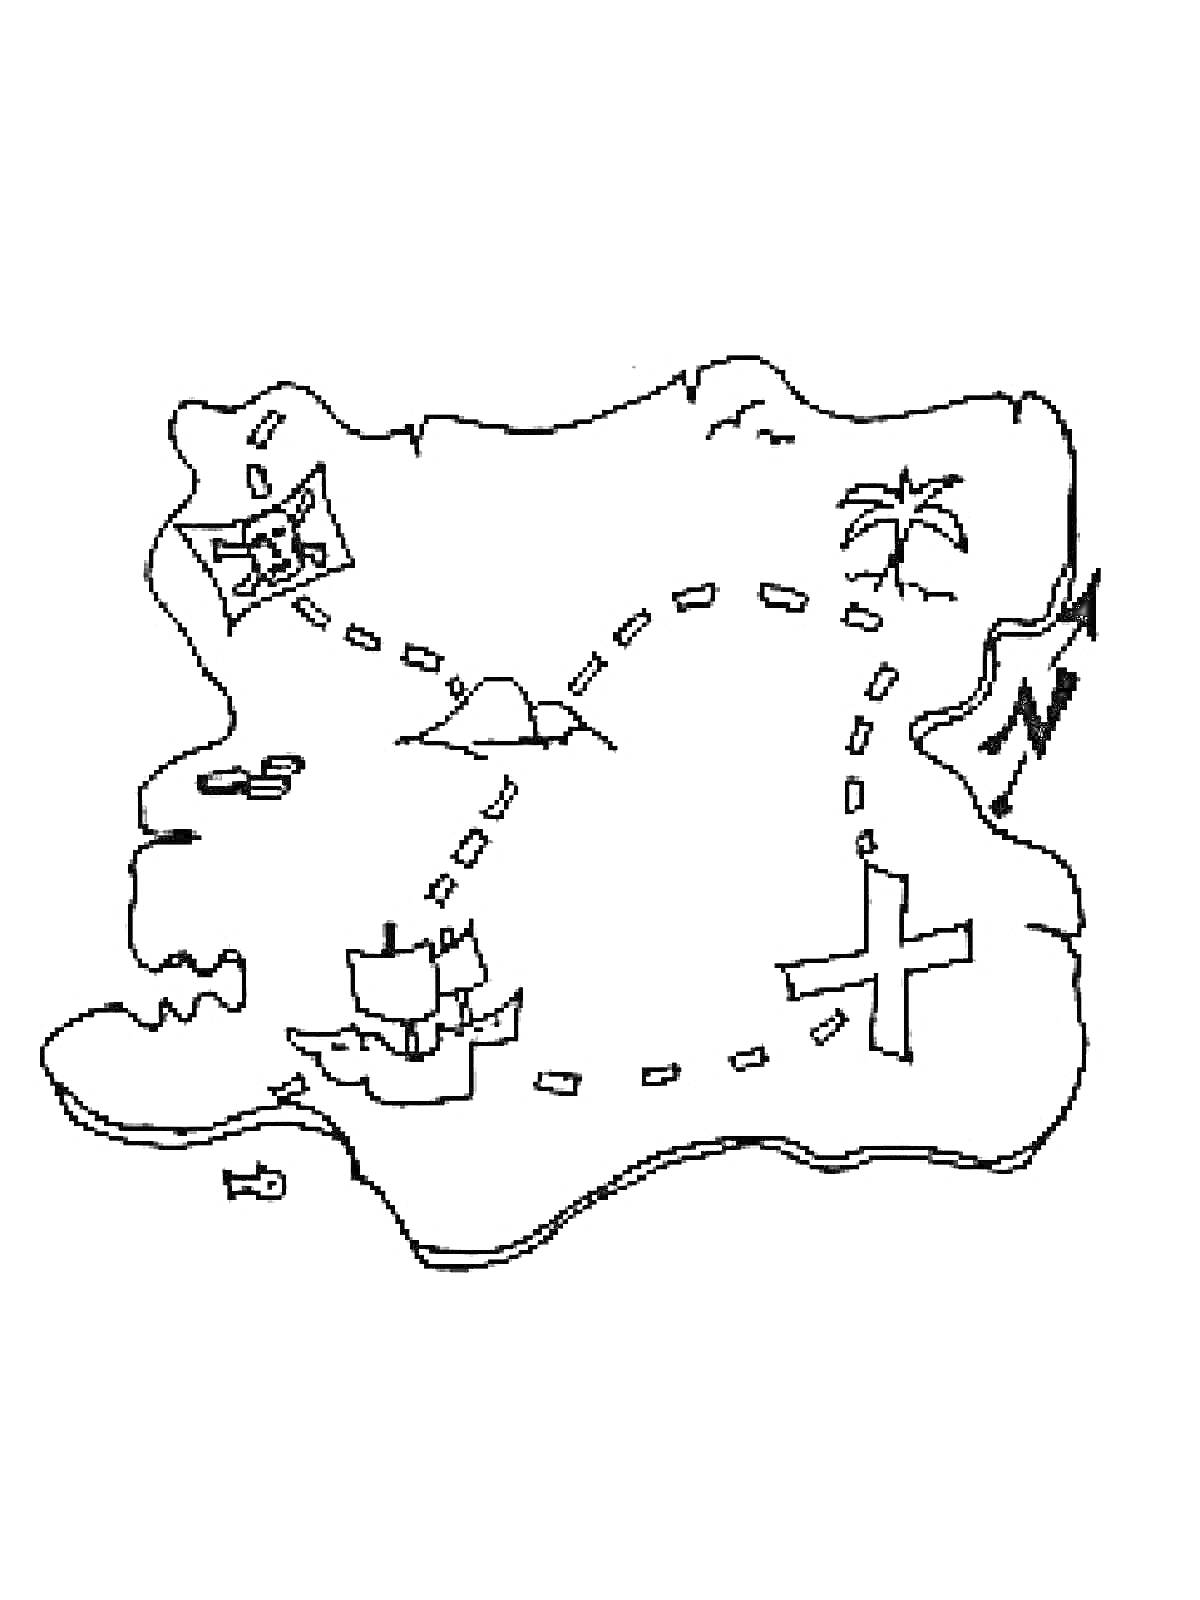 Раскраска Карта сокровищ с островом, пальмой, кораблем, компасом и маршрутом к сокровищу